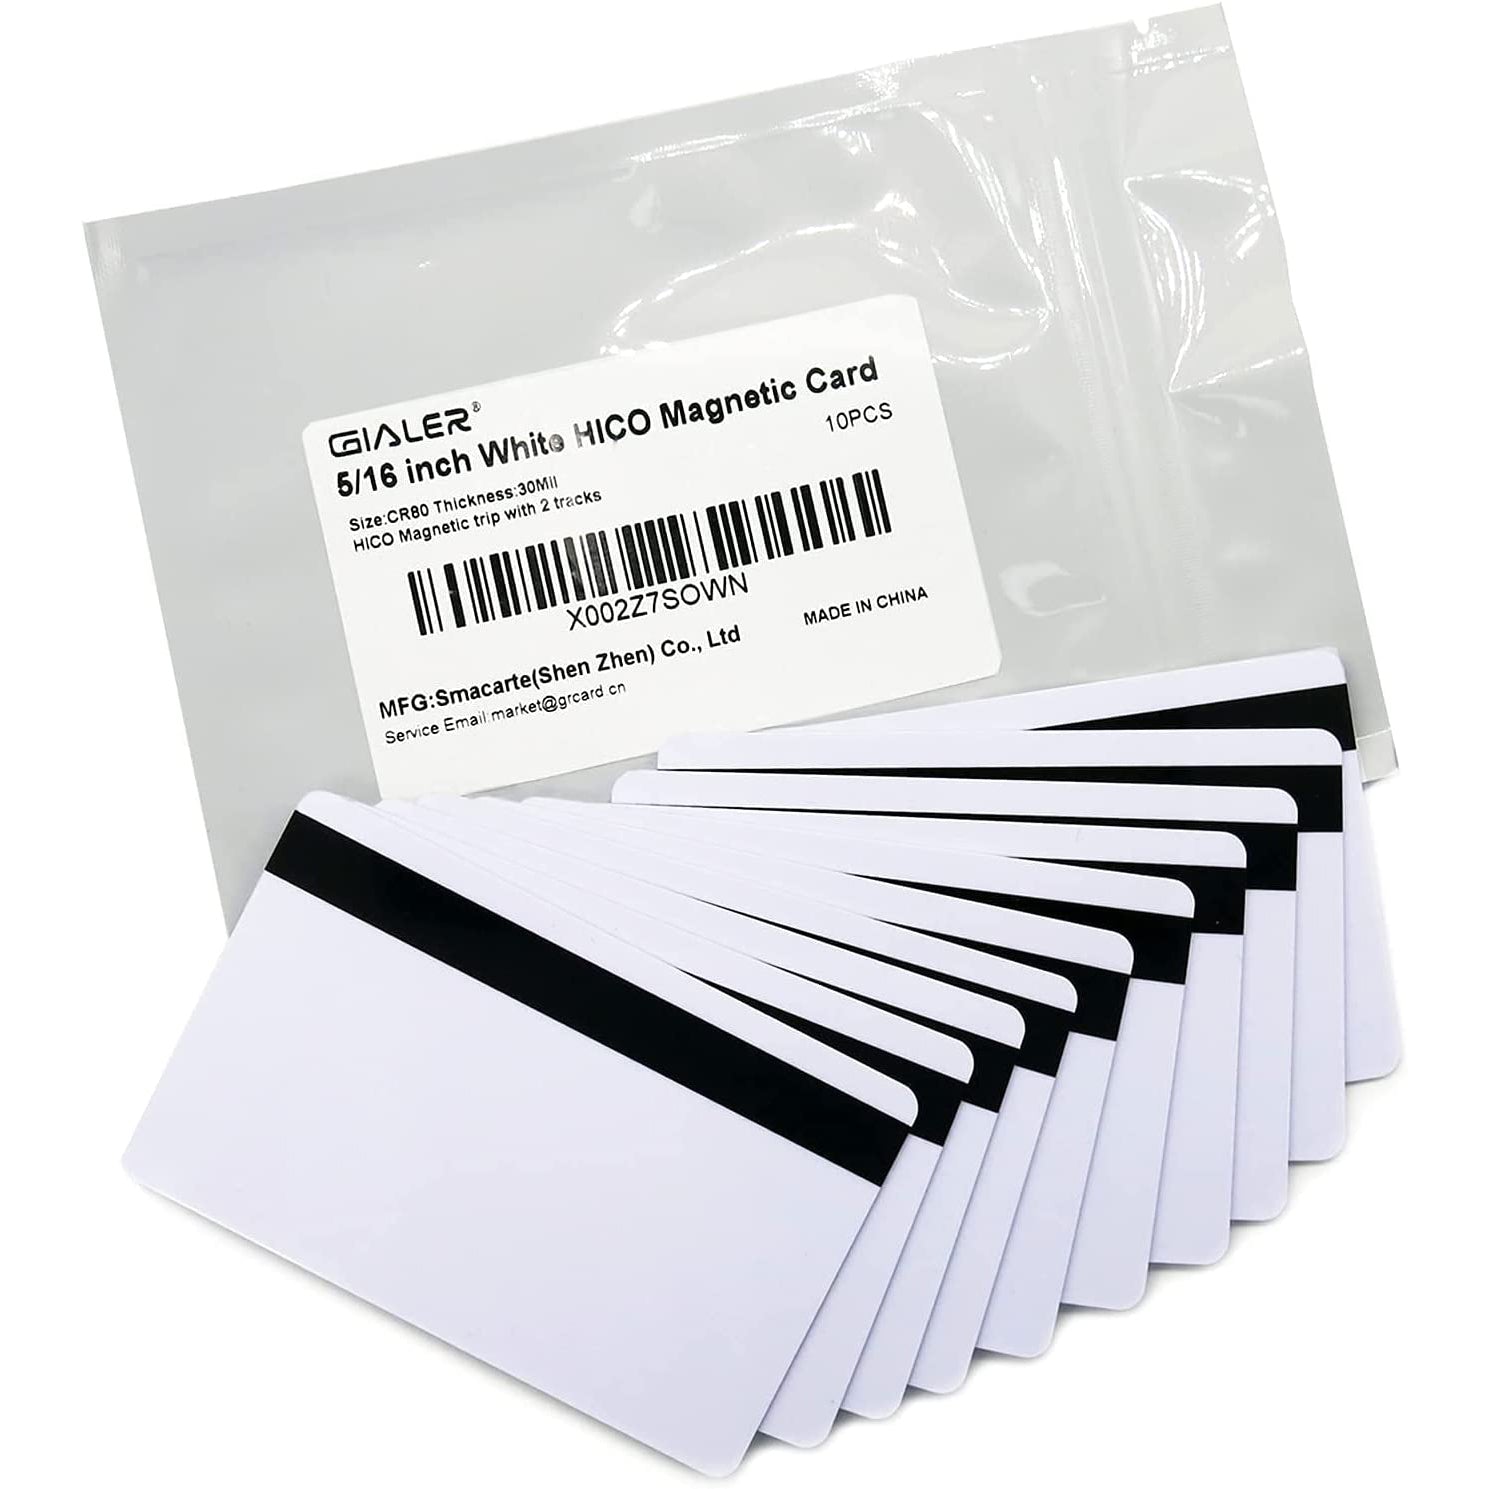 Gialer 5/16inch HiCo Magnetic Stripe Premium White PVC Cards - CR80 30Mil Blank PVC Plastic Card